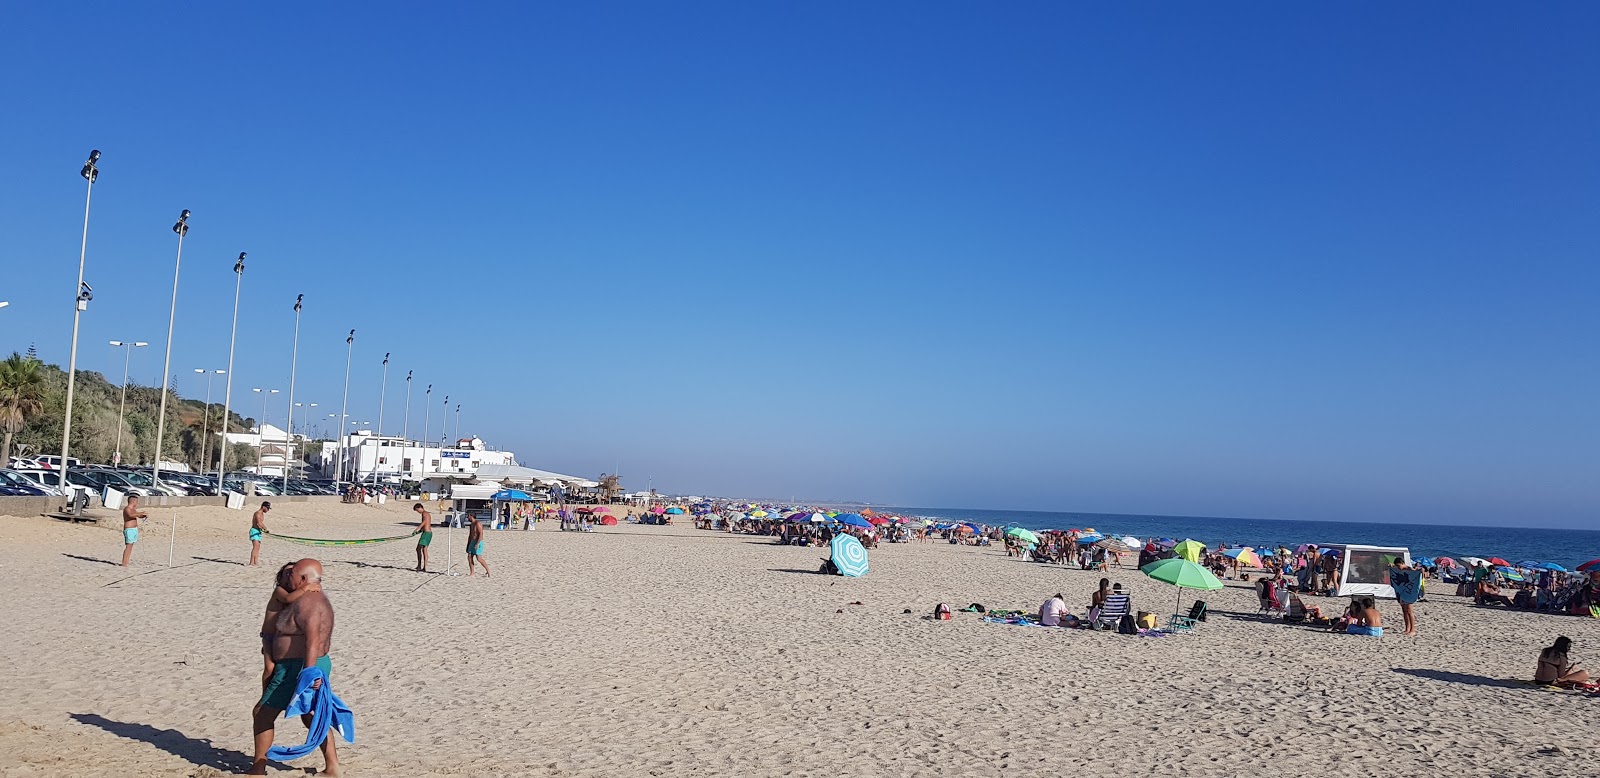 Playa de la Fontanilla En Conil'in fotoğrafı - rahatlamayı sevenler arasında popüler bir yer